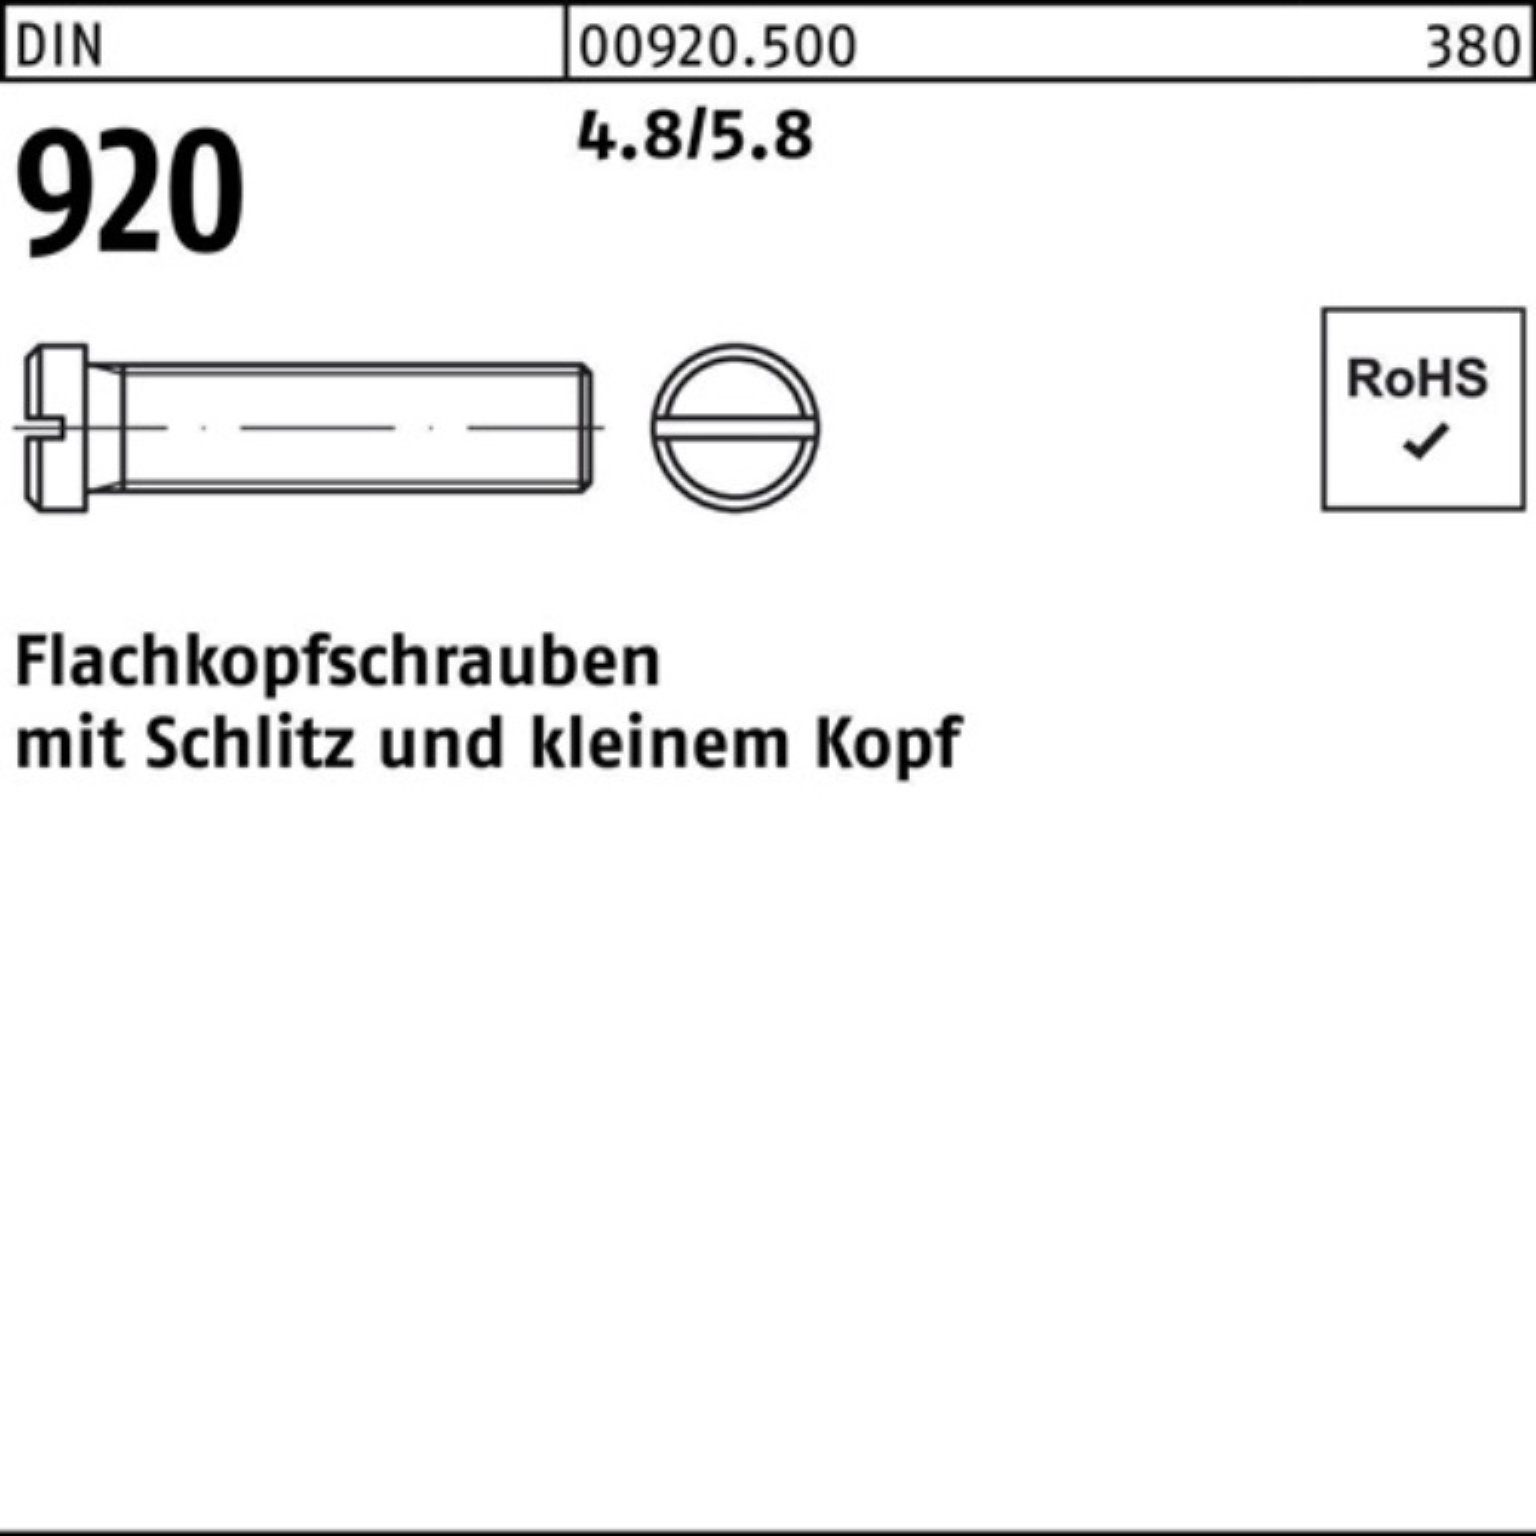 Pack Stück 4.8/5.8 100er Flachkopfschraube Schraube Reyher Schlitz M3x 920 10 DIN 100